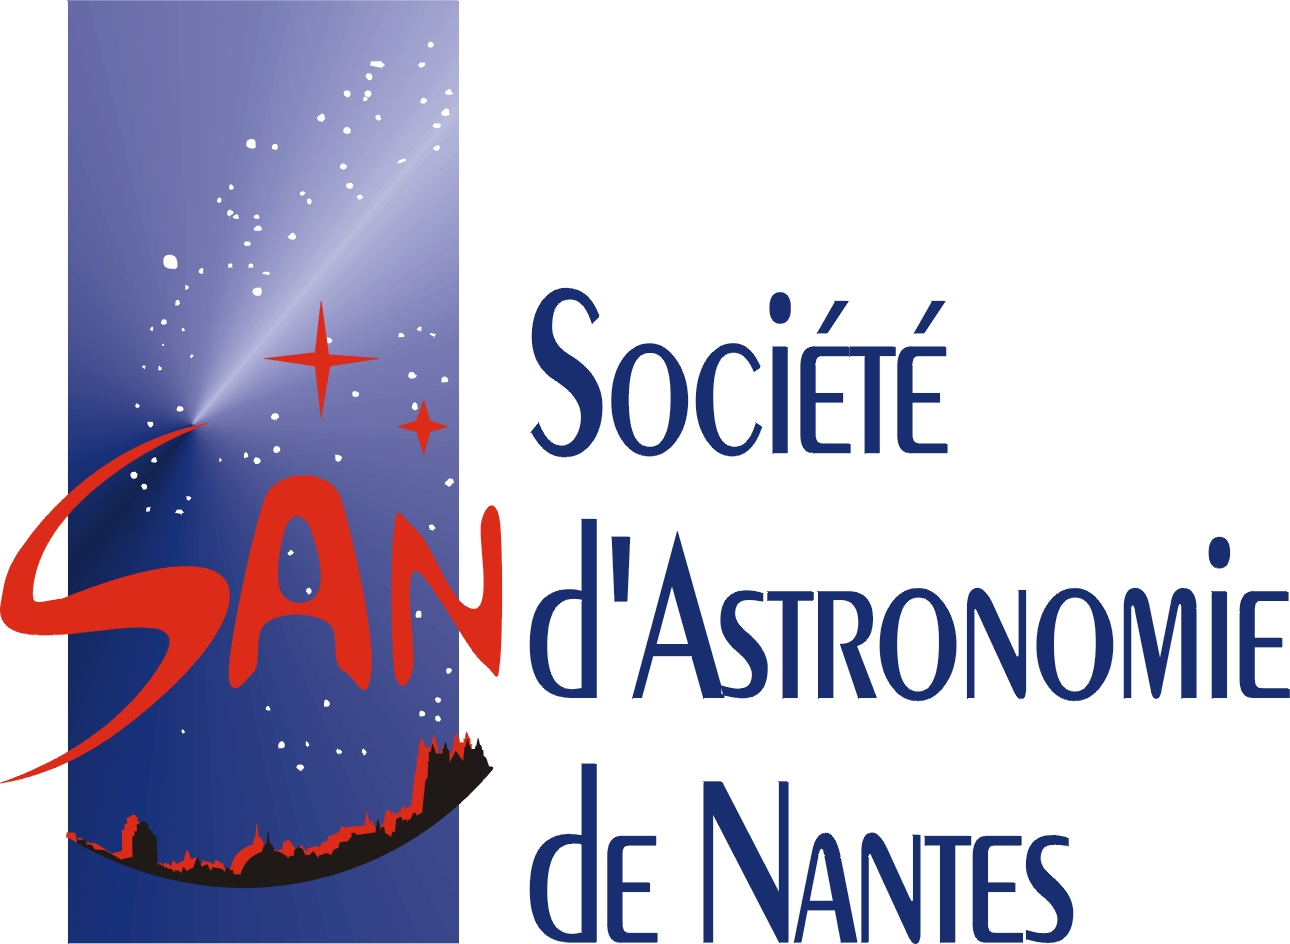 Société d'Astronomie de Nantes